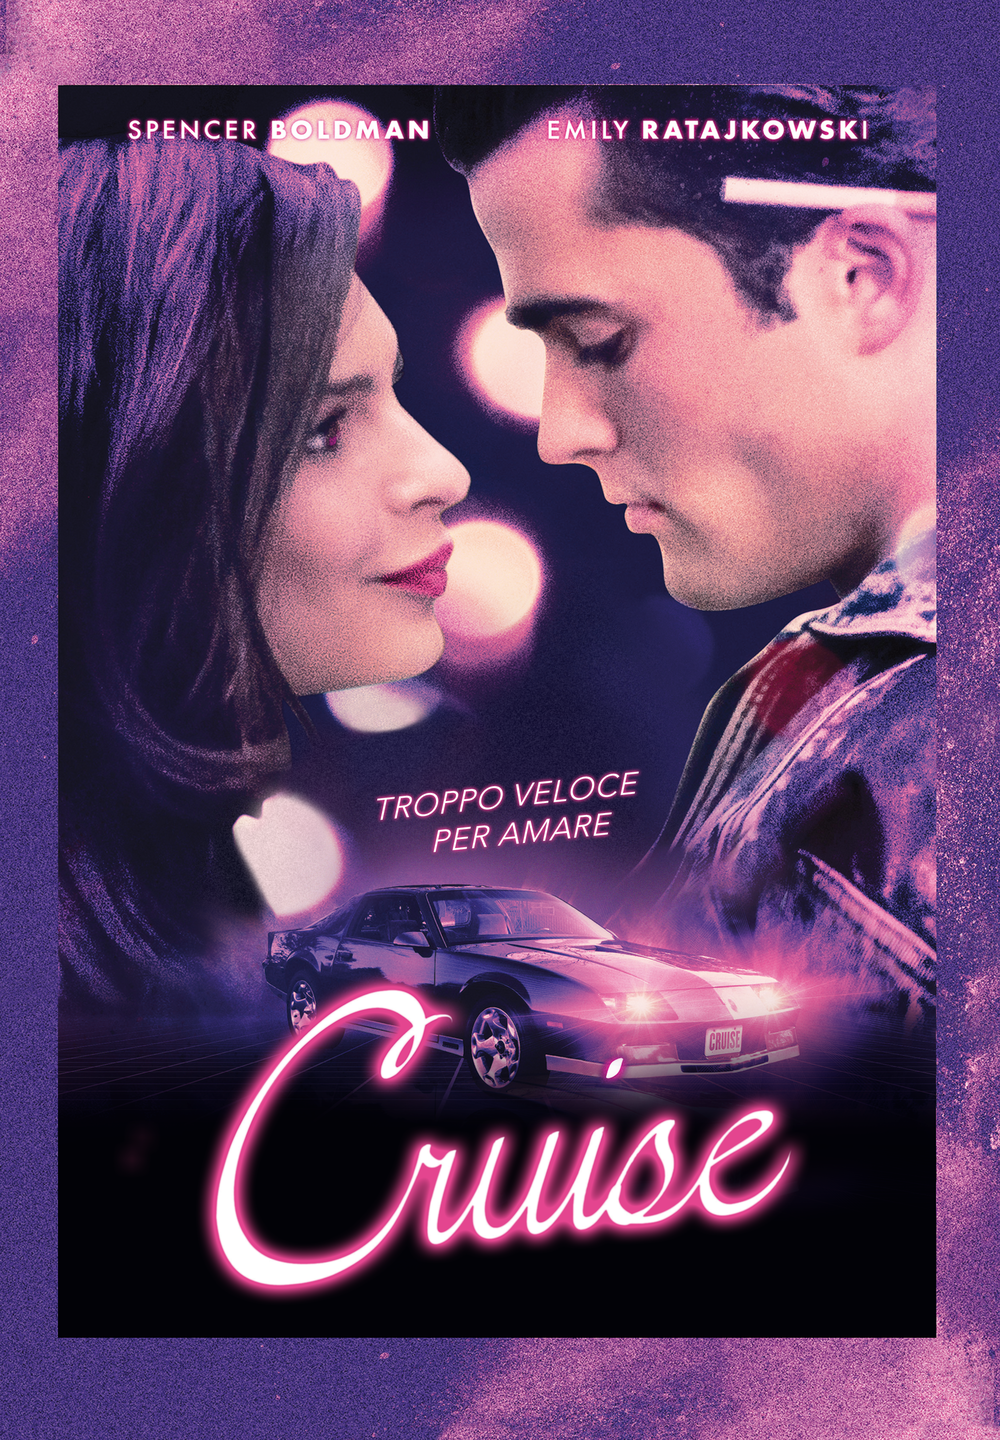 Cruise [HD] (2018)